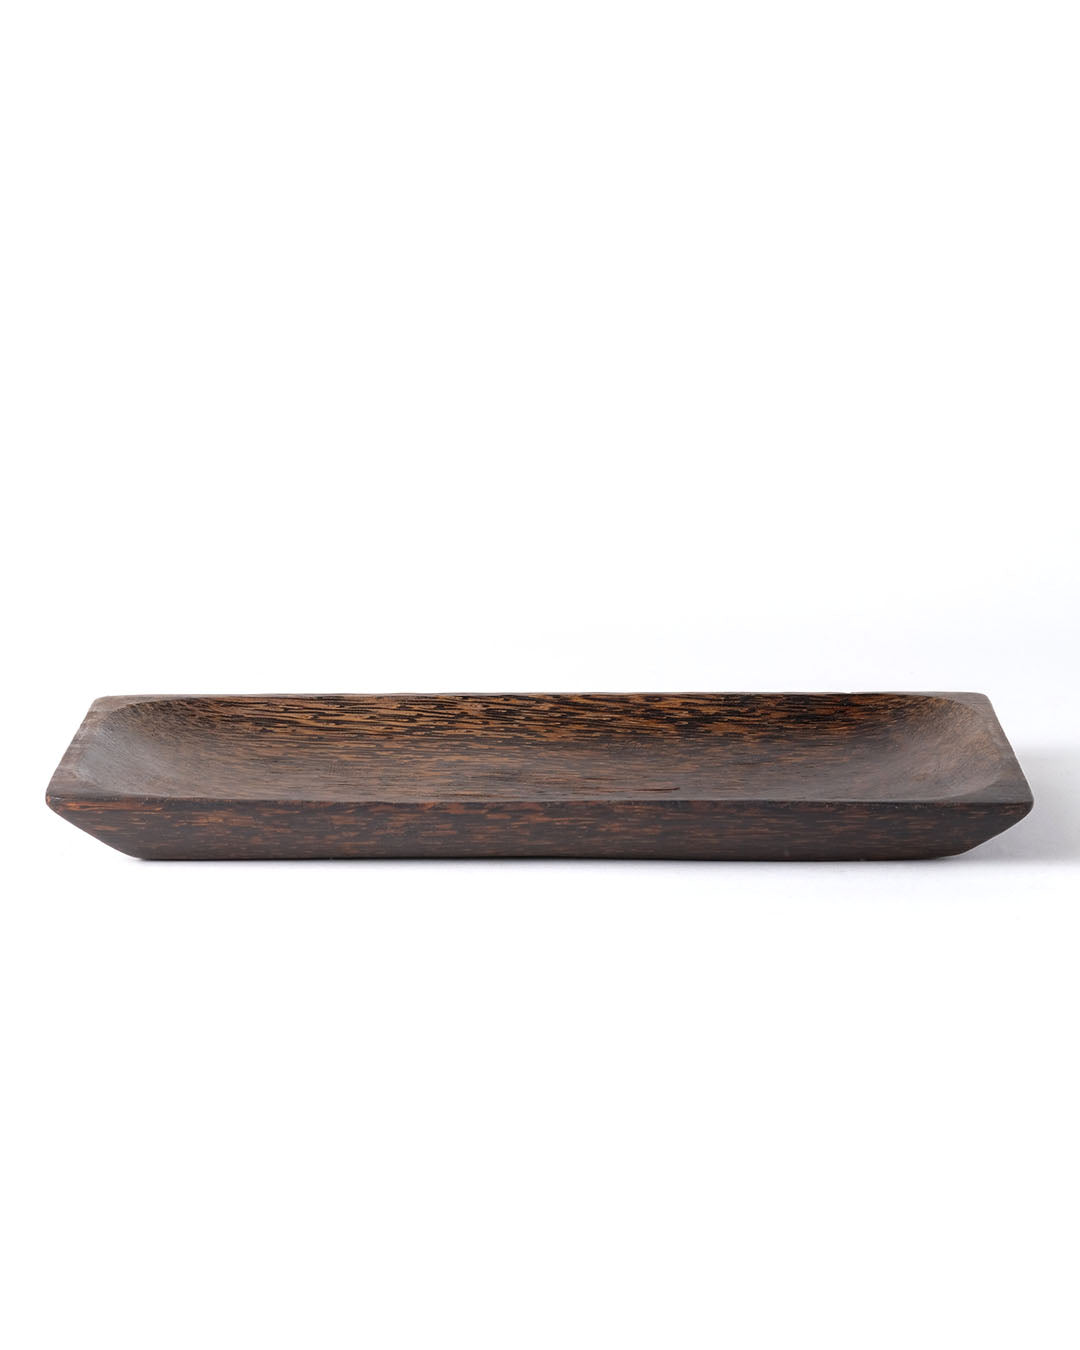 Plato de servir de madera de palmera Nunukan, realizado en Indonesia por artesanos, altura 2,5 cm largo 30 cm profundidad 15 cm.